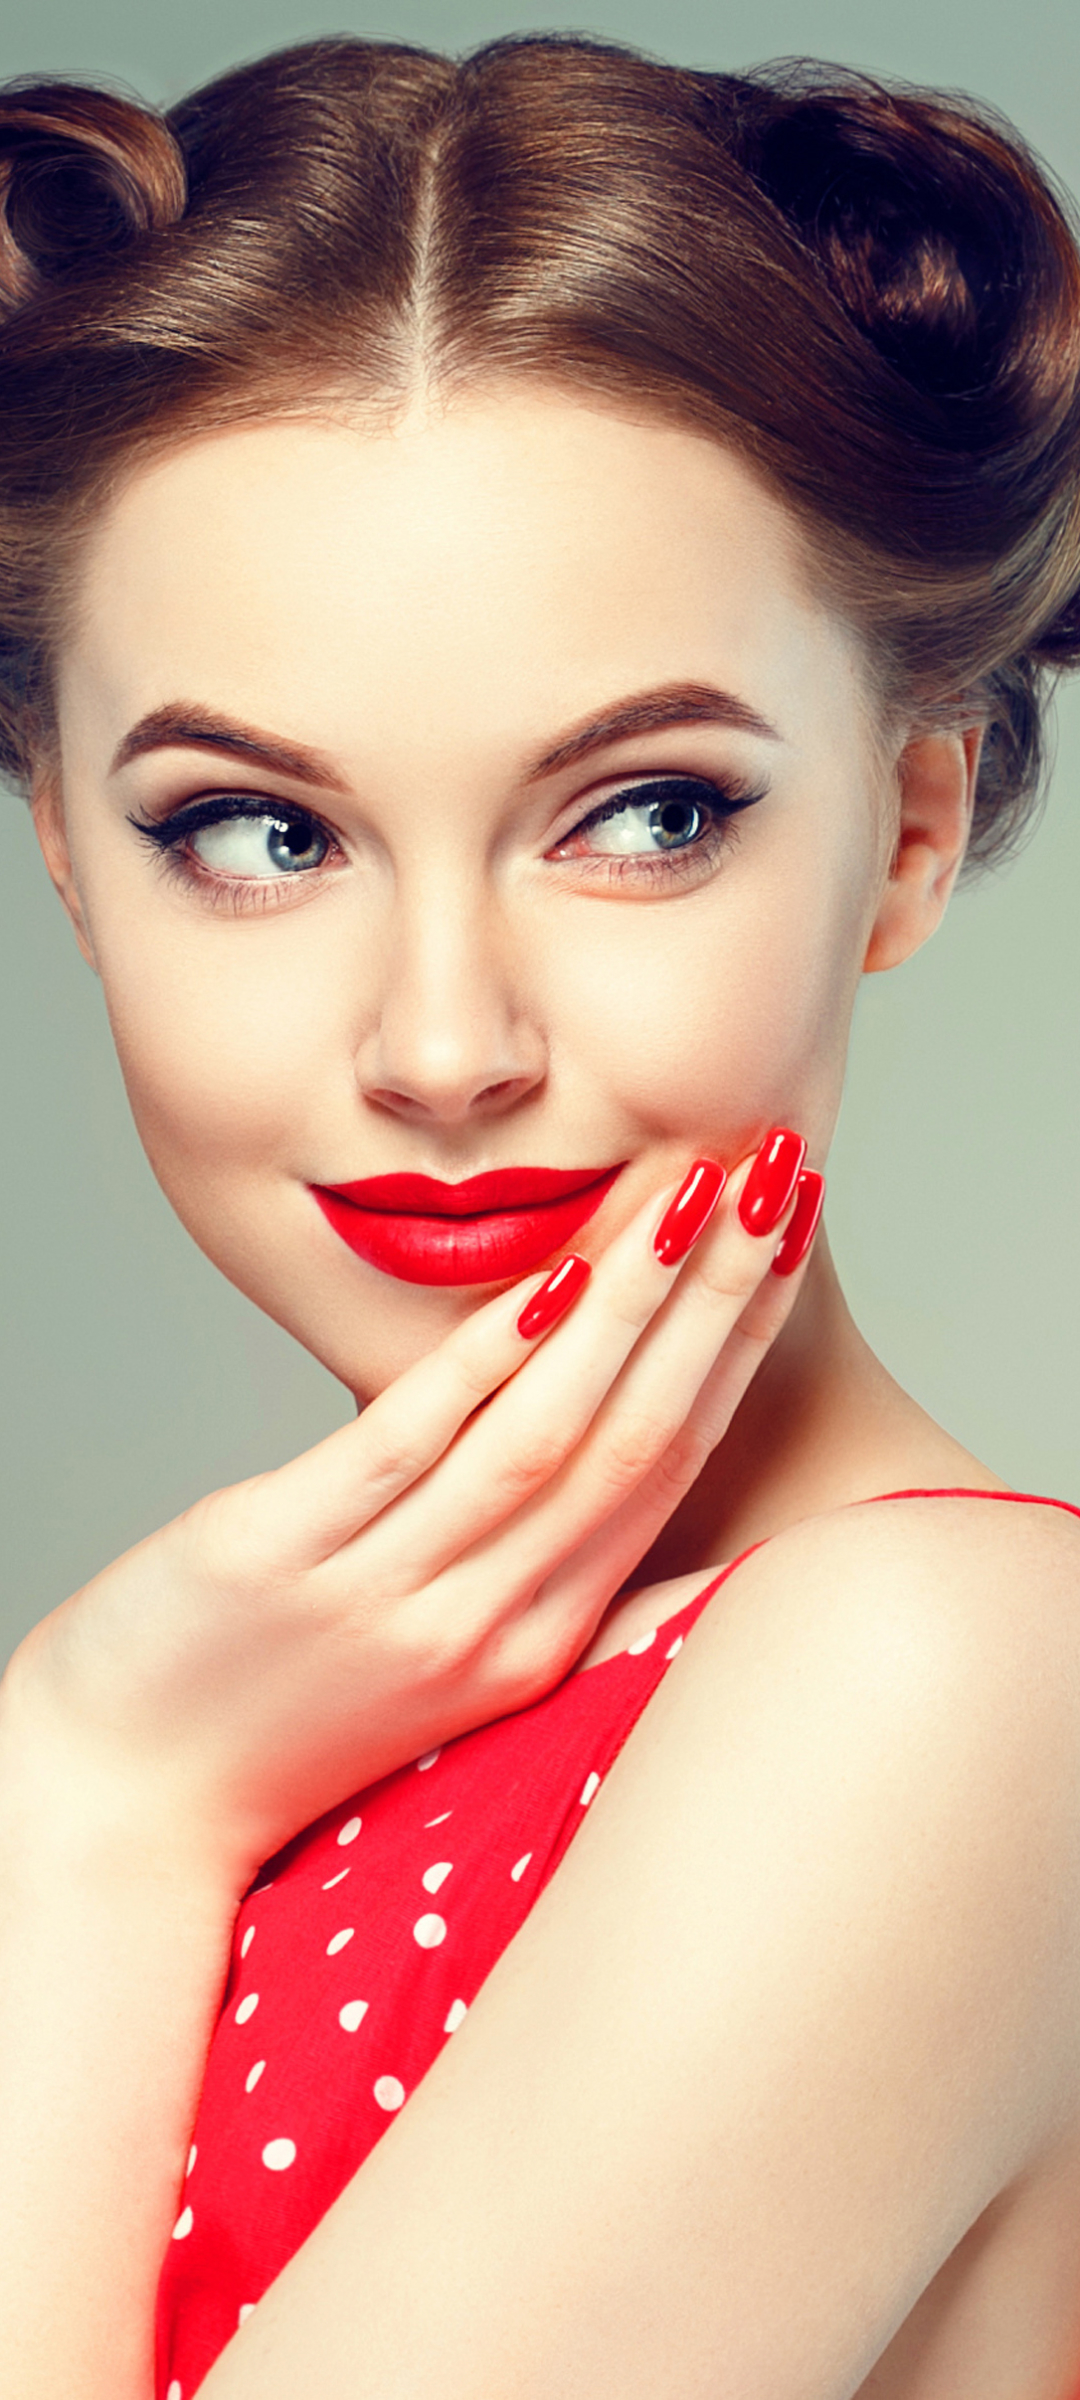 Download mobile wallpaper Smile, Brunette, Model, Women, Blue Eyes, Lipstick for free.